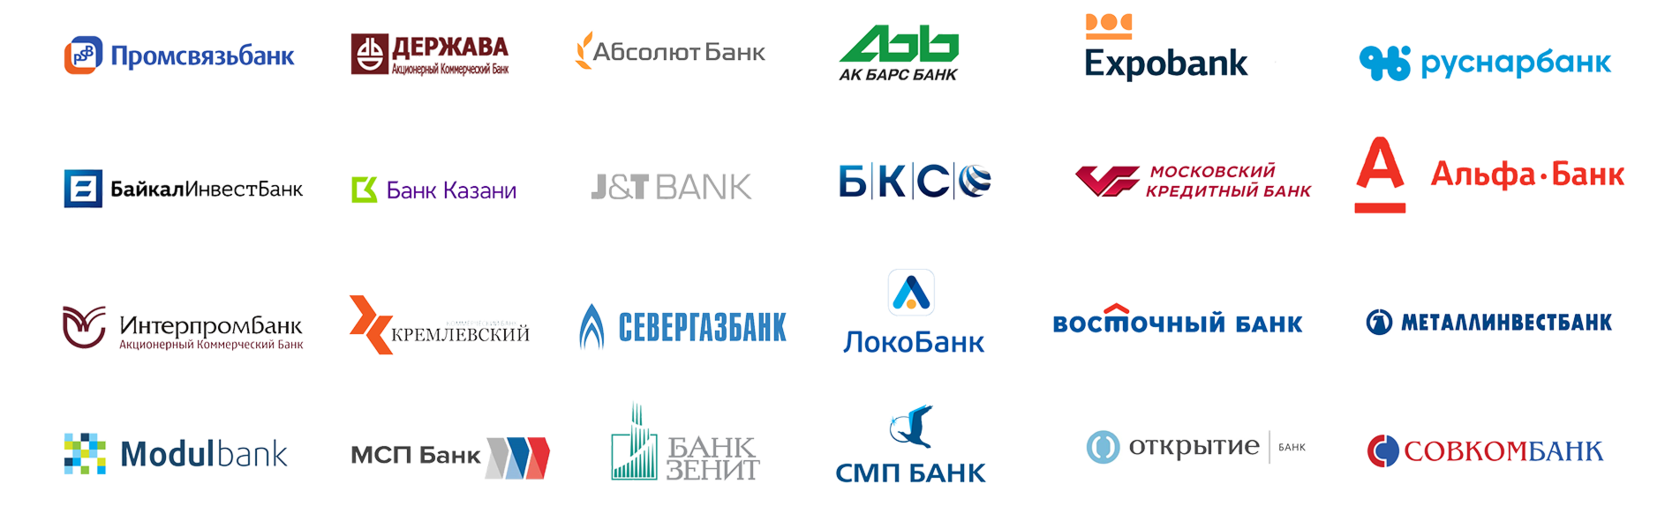 Банки партнеры бонусы. Банки партнеры. Банки партнеры список. Модуль банк партнер. Банки партнеры РЖД.